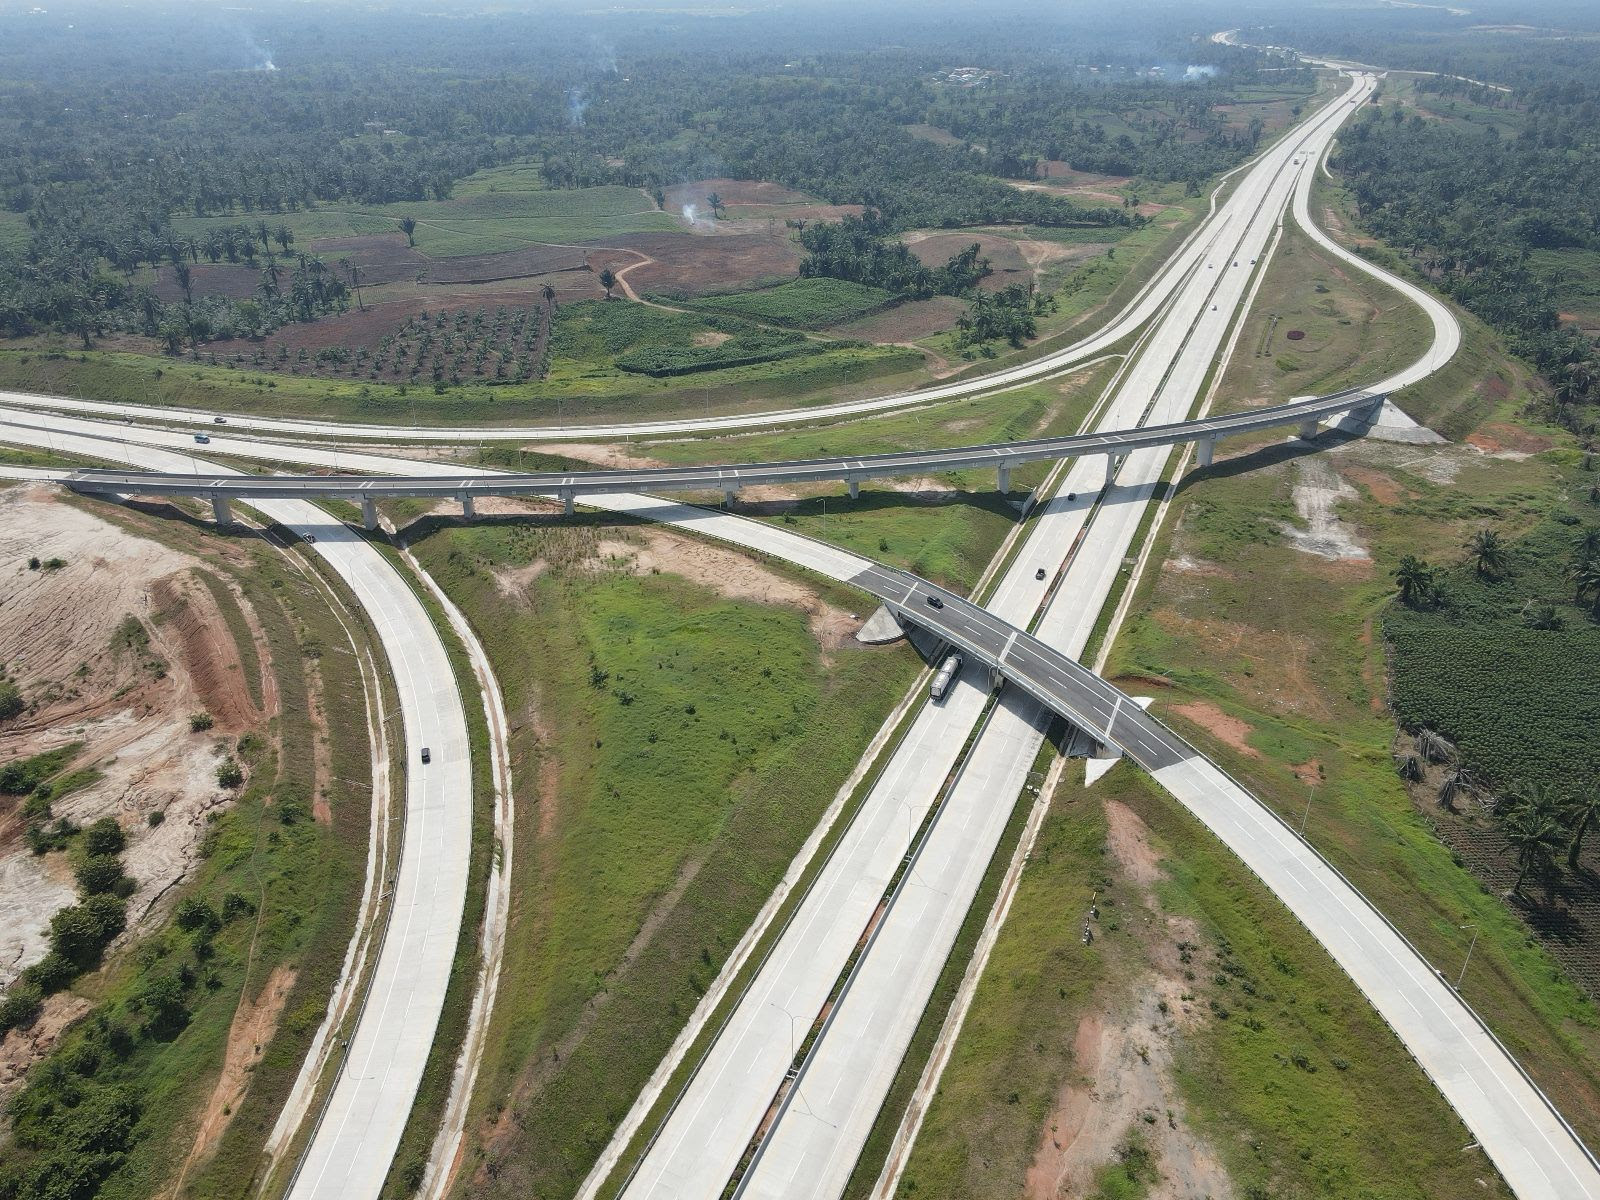  Pemerintah Siapkan Anggaran Rp 18,6 Triliun untuk Pembangunan Jalan TOL Trans Sumatera